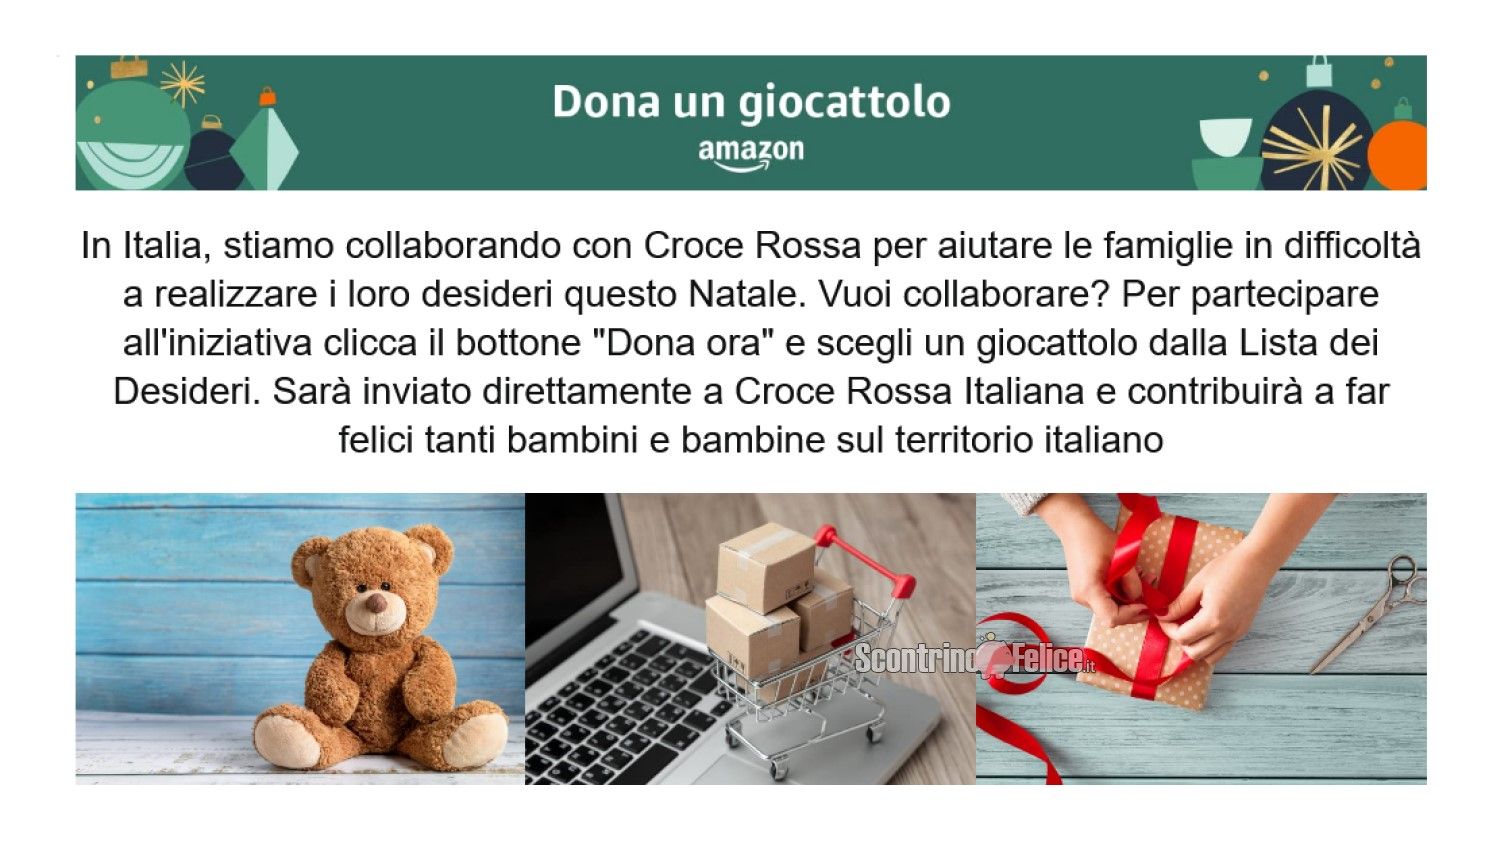 Dona un giocattolo con Amazon e Croce Rossa Italiana 2021